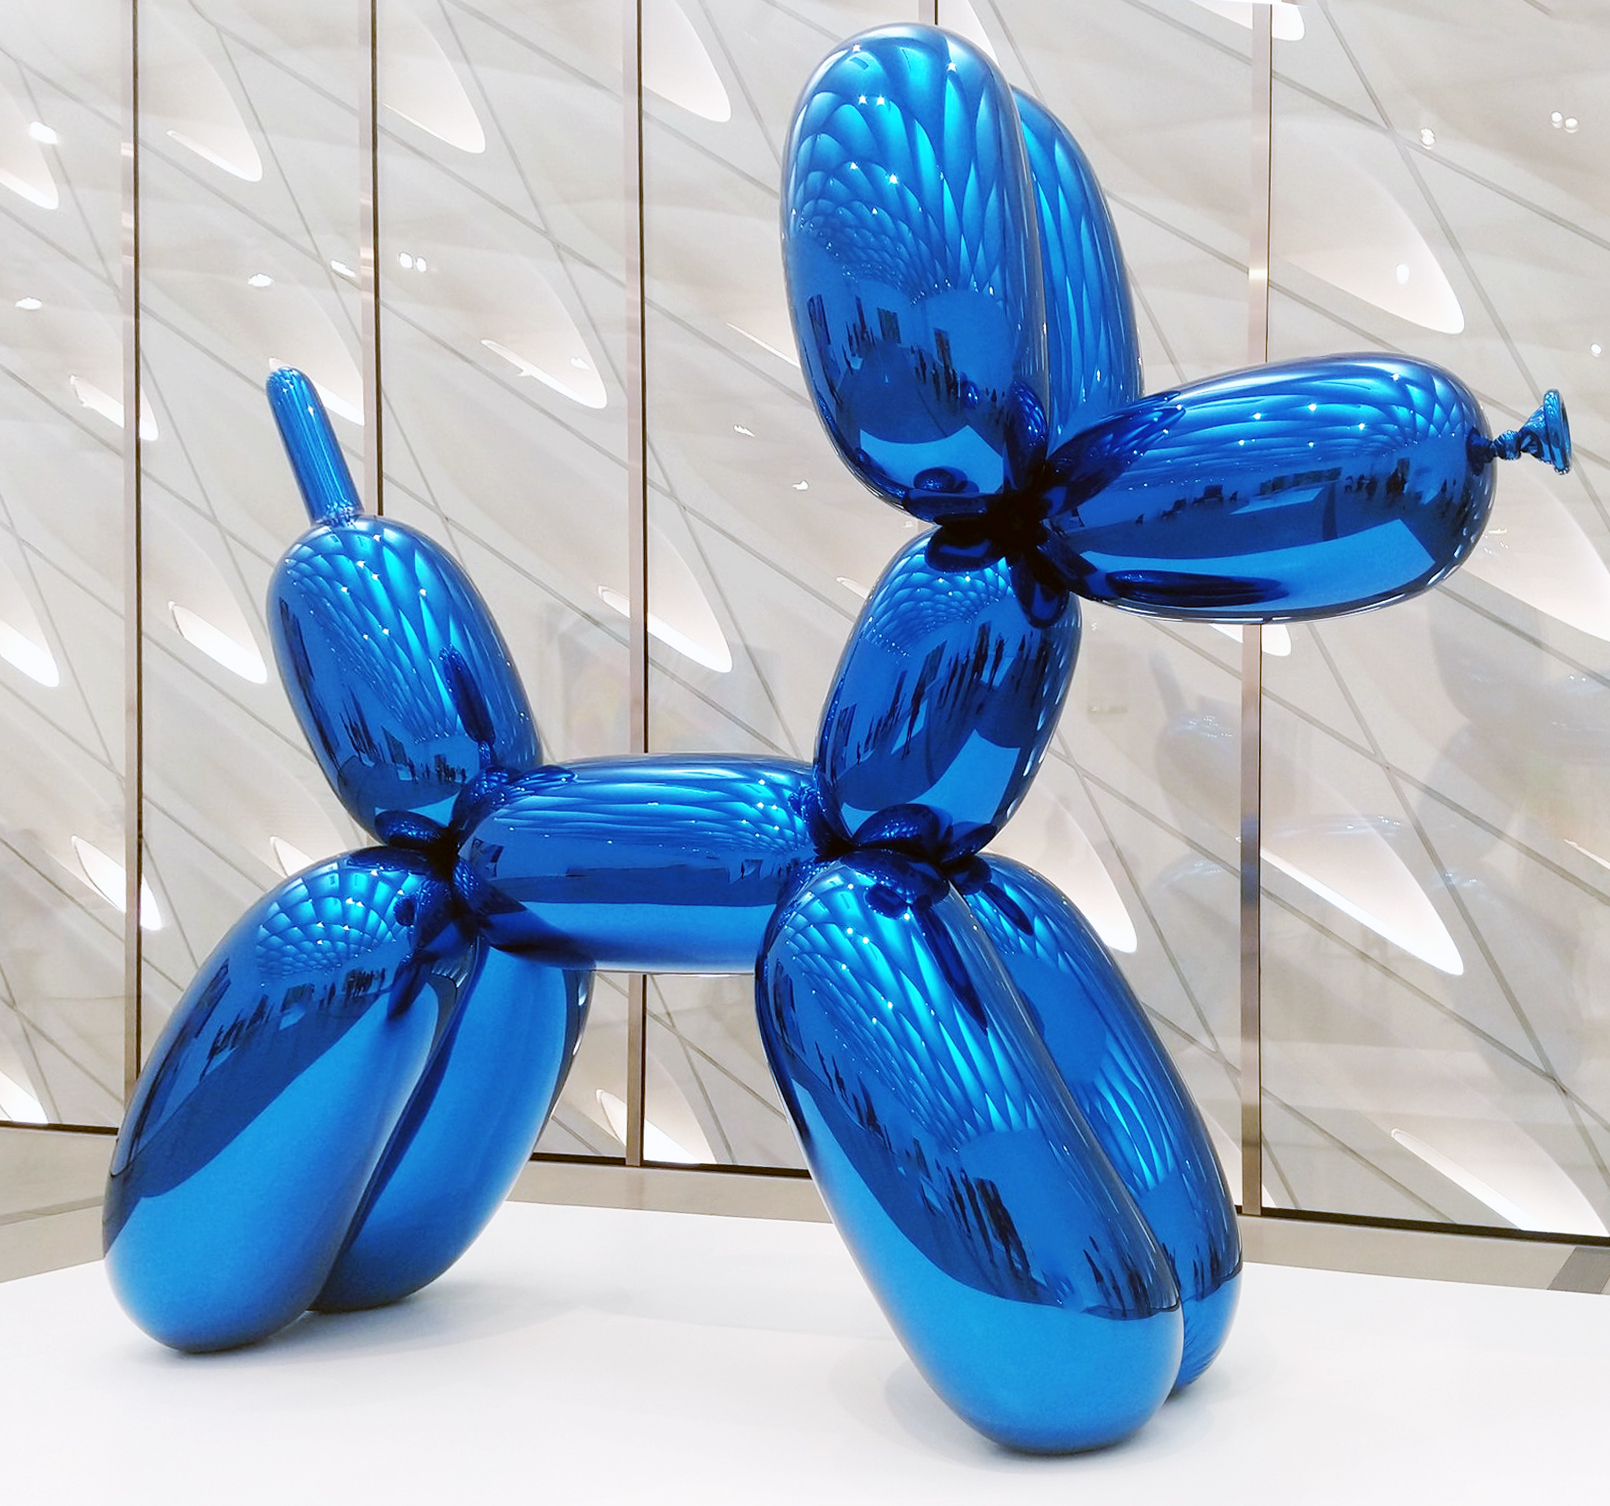 Jeff Koons, Balloon Dog (Blue), 1994-2000